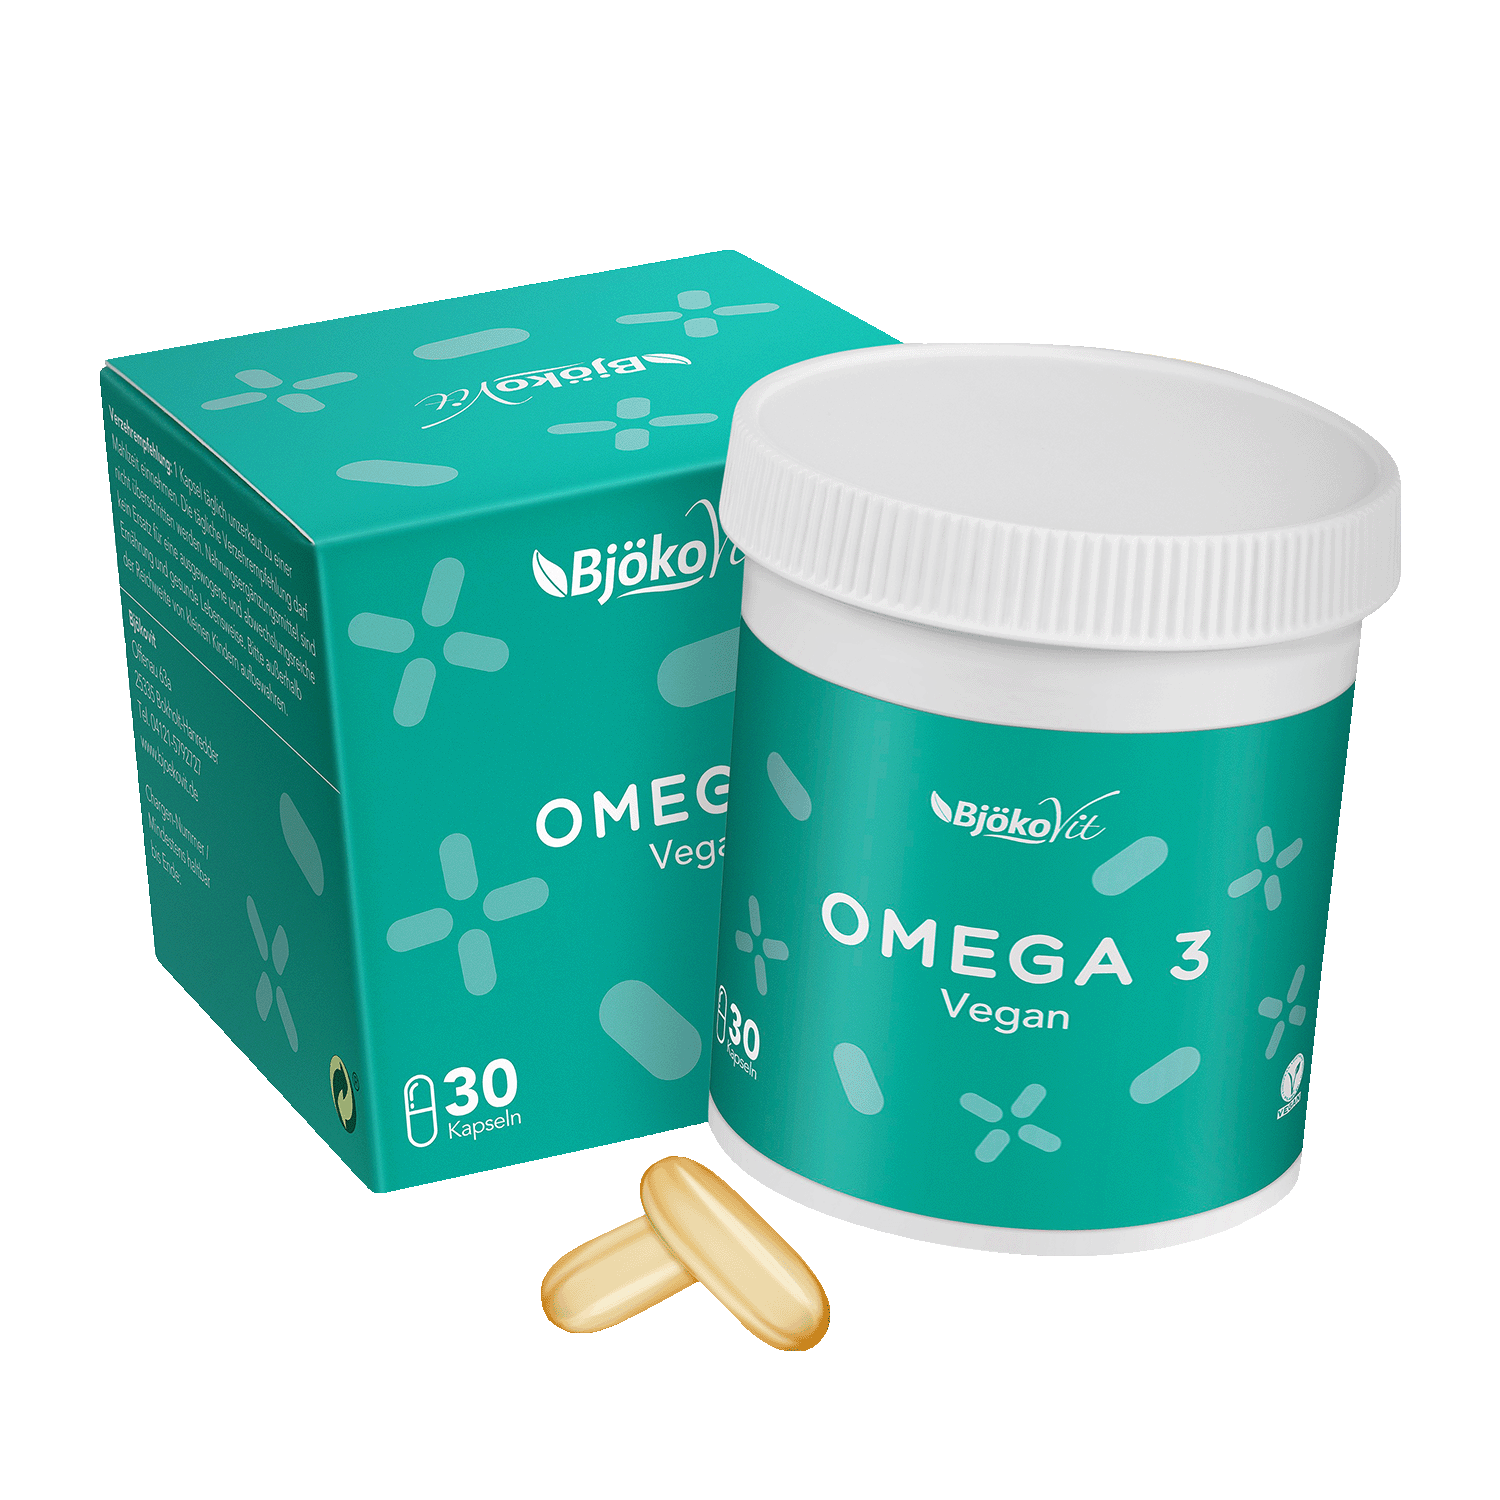 Omega 3 vegan, 30 Kapseln, 35.5g